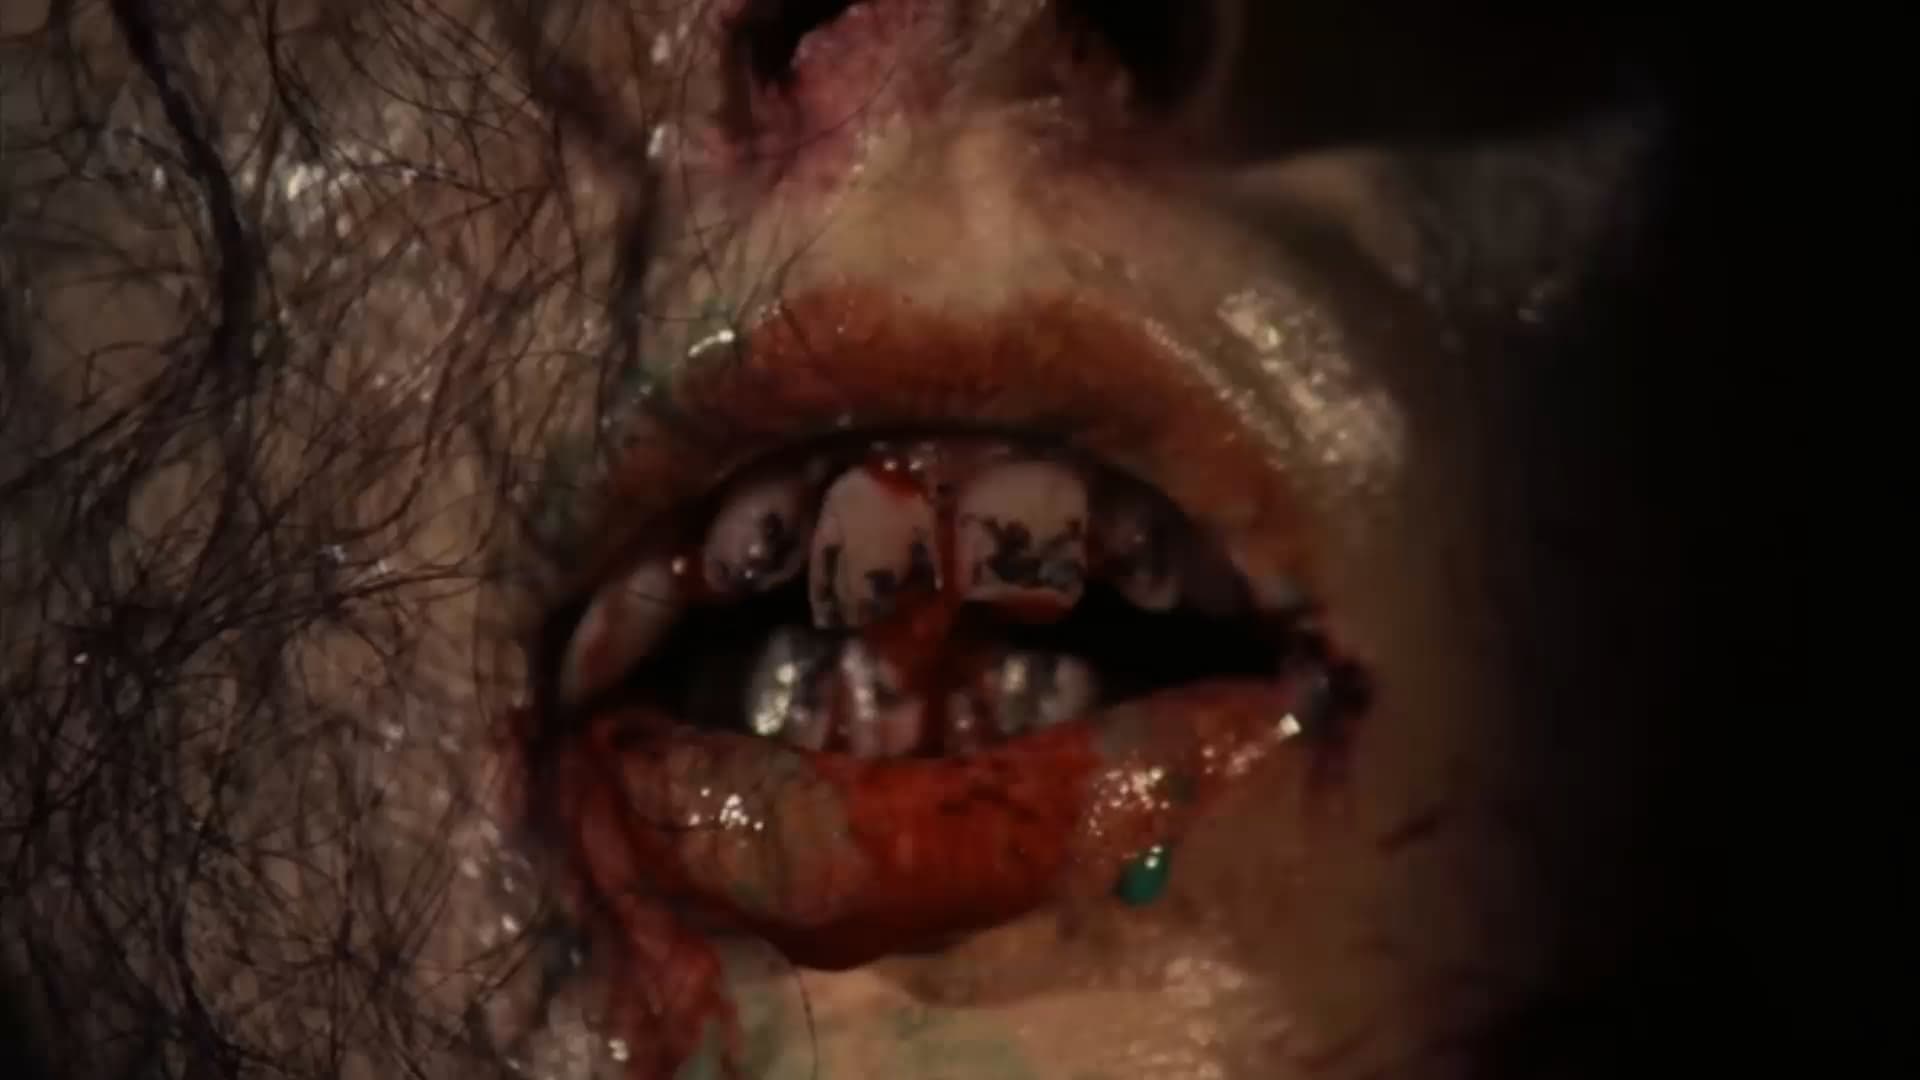 デモンズ再び復活!デモンズu0026デモンズ2 恐怖映画新世紀の鬼才ダリオ・アルジェントが仕掛けた鮮血の地獄迷路。